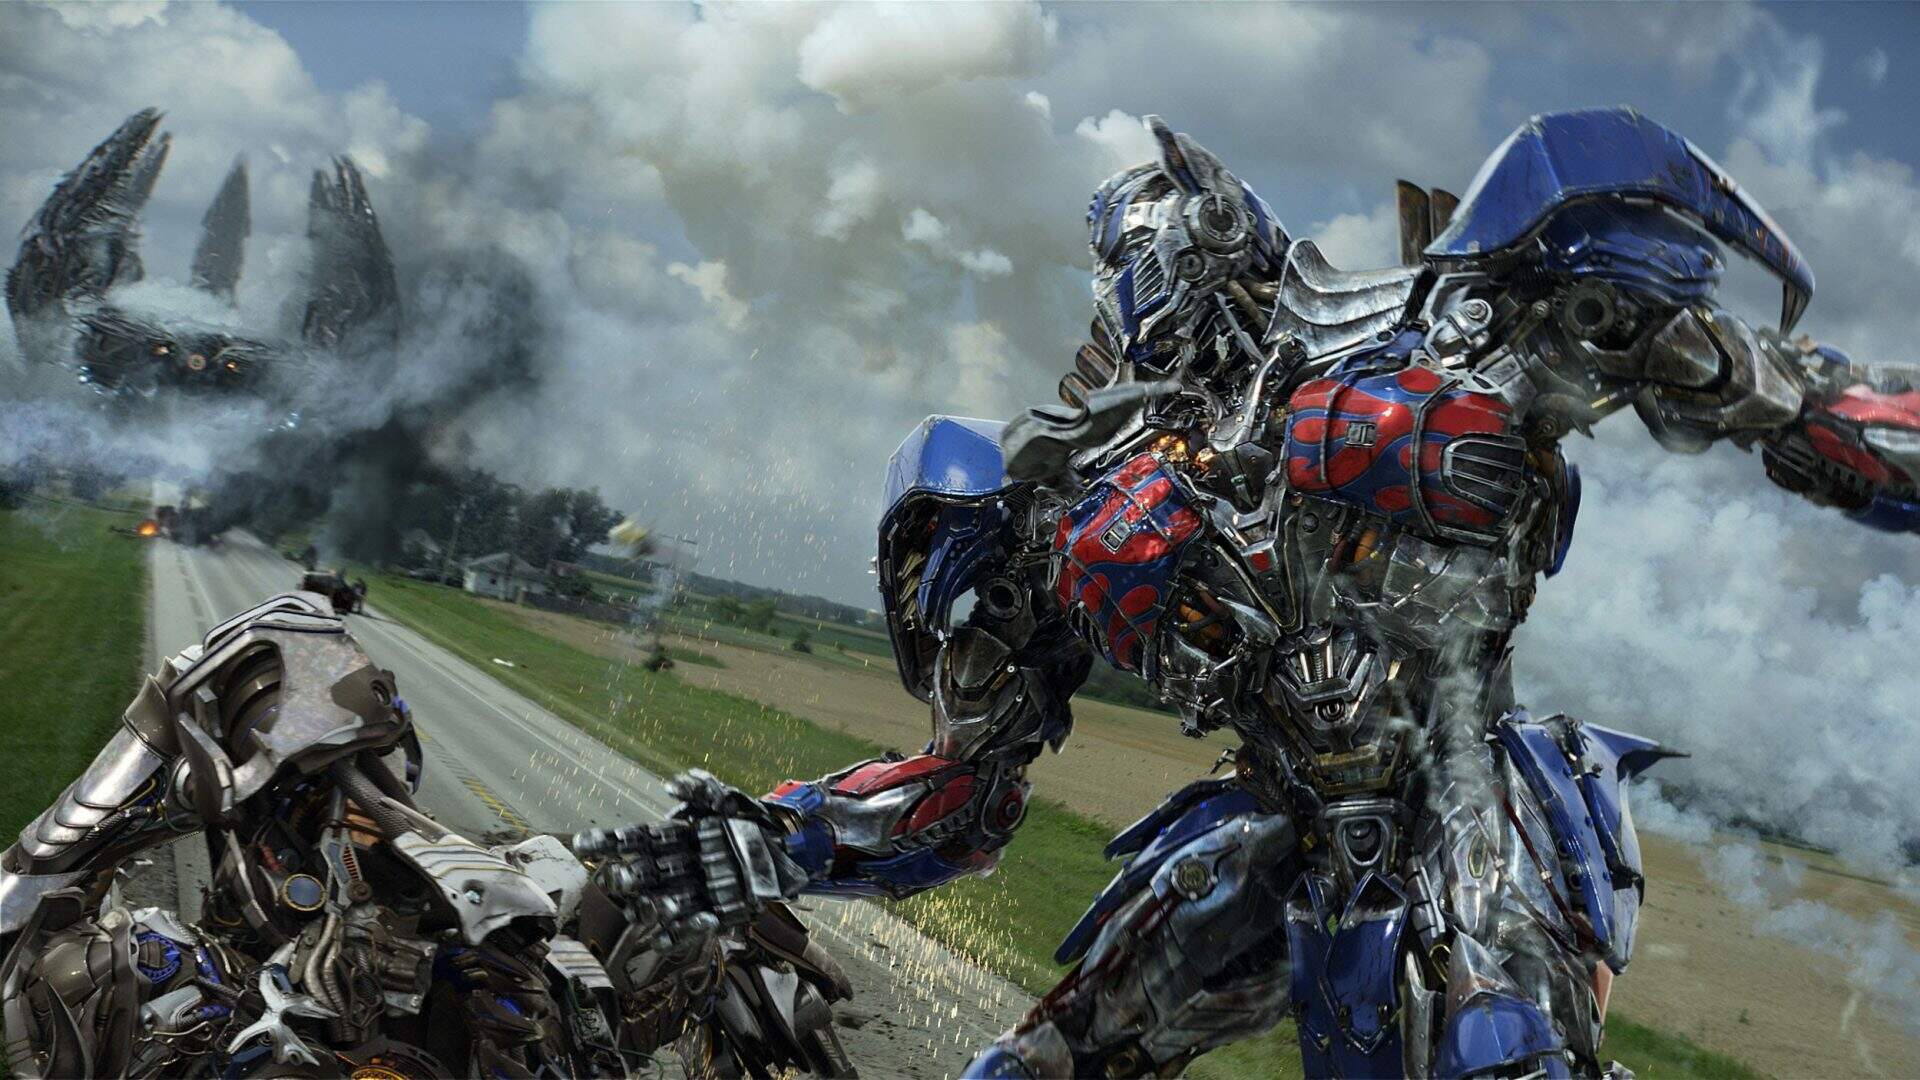 Bilheteria de 'Transformers: O despertar das feras' fica abaixo